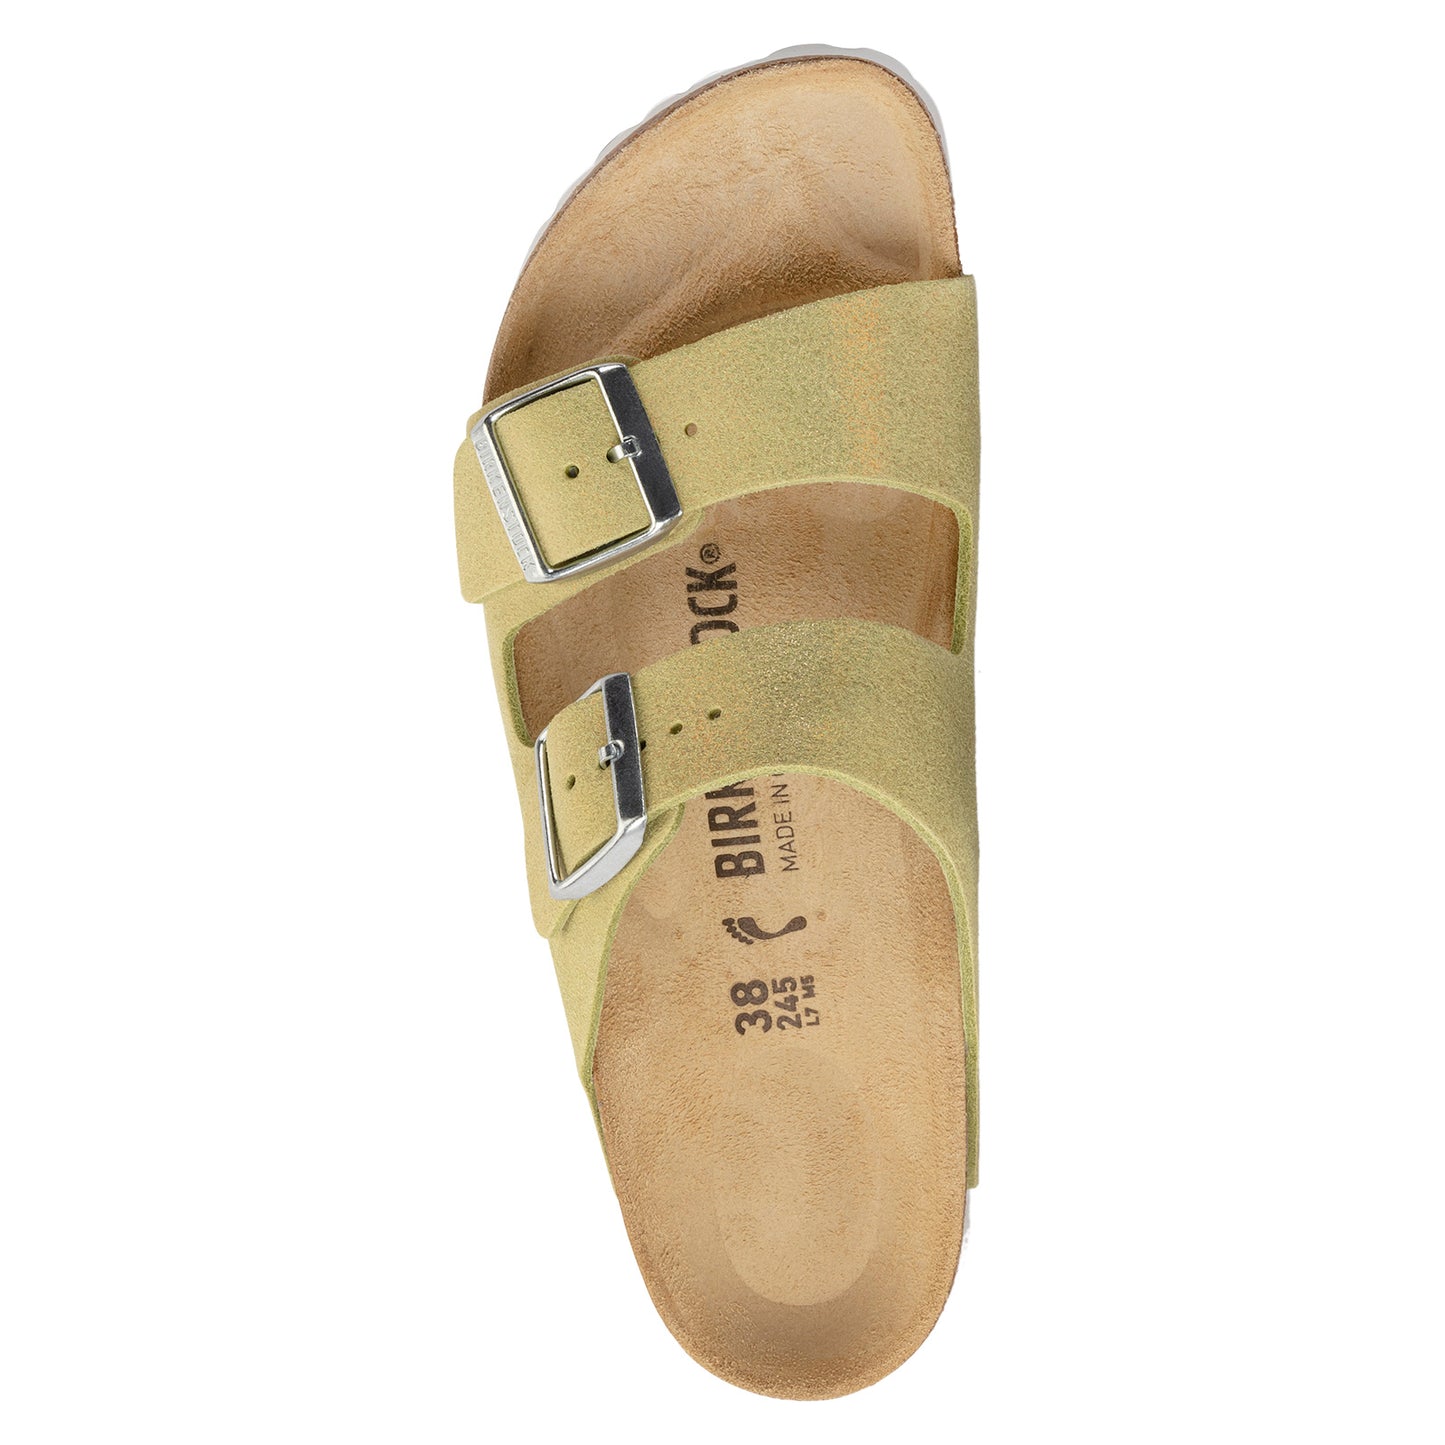 Peltz Shoes  Women's Birkenstock Arizona Shimmering Sandal - Narrow Fit YELLOW 1024 201 N